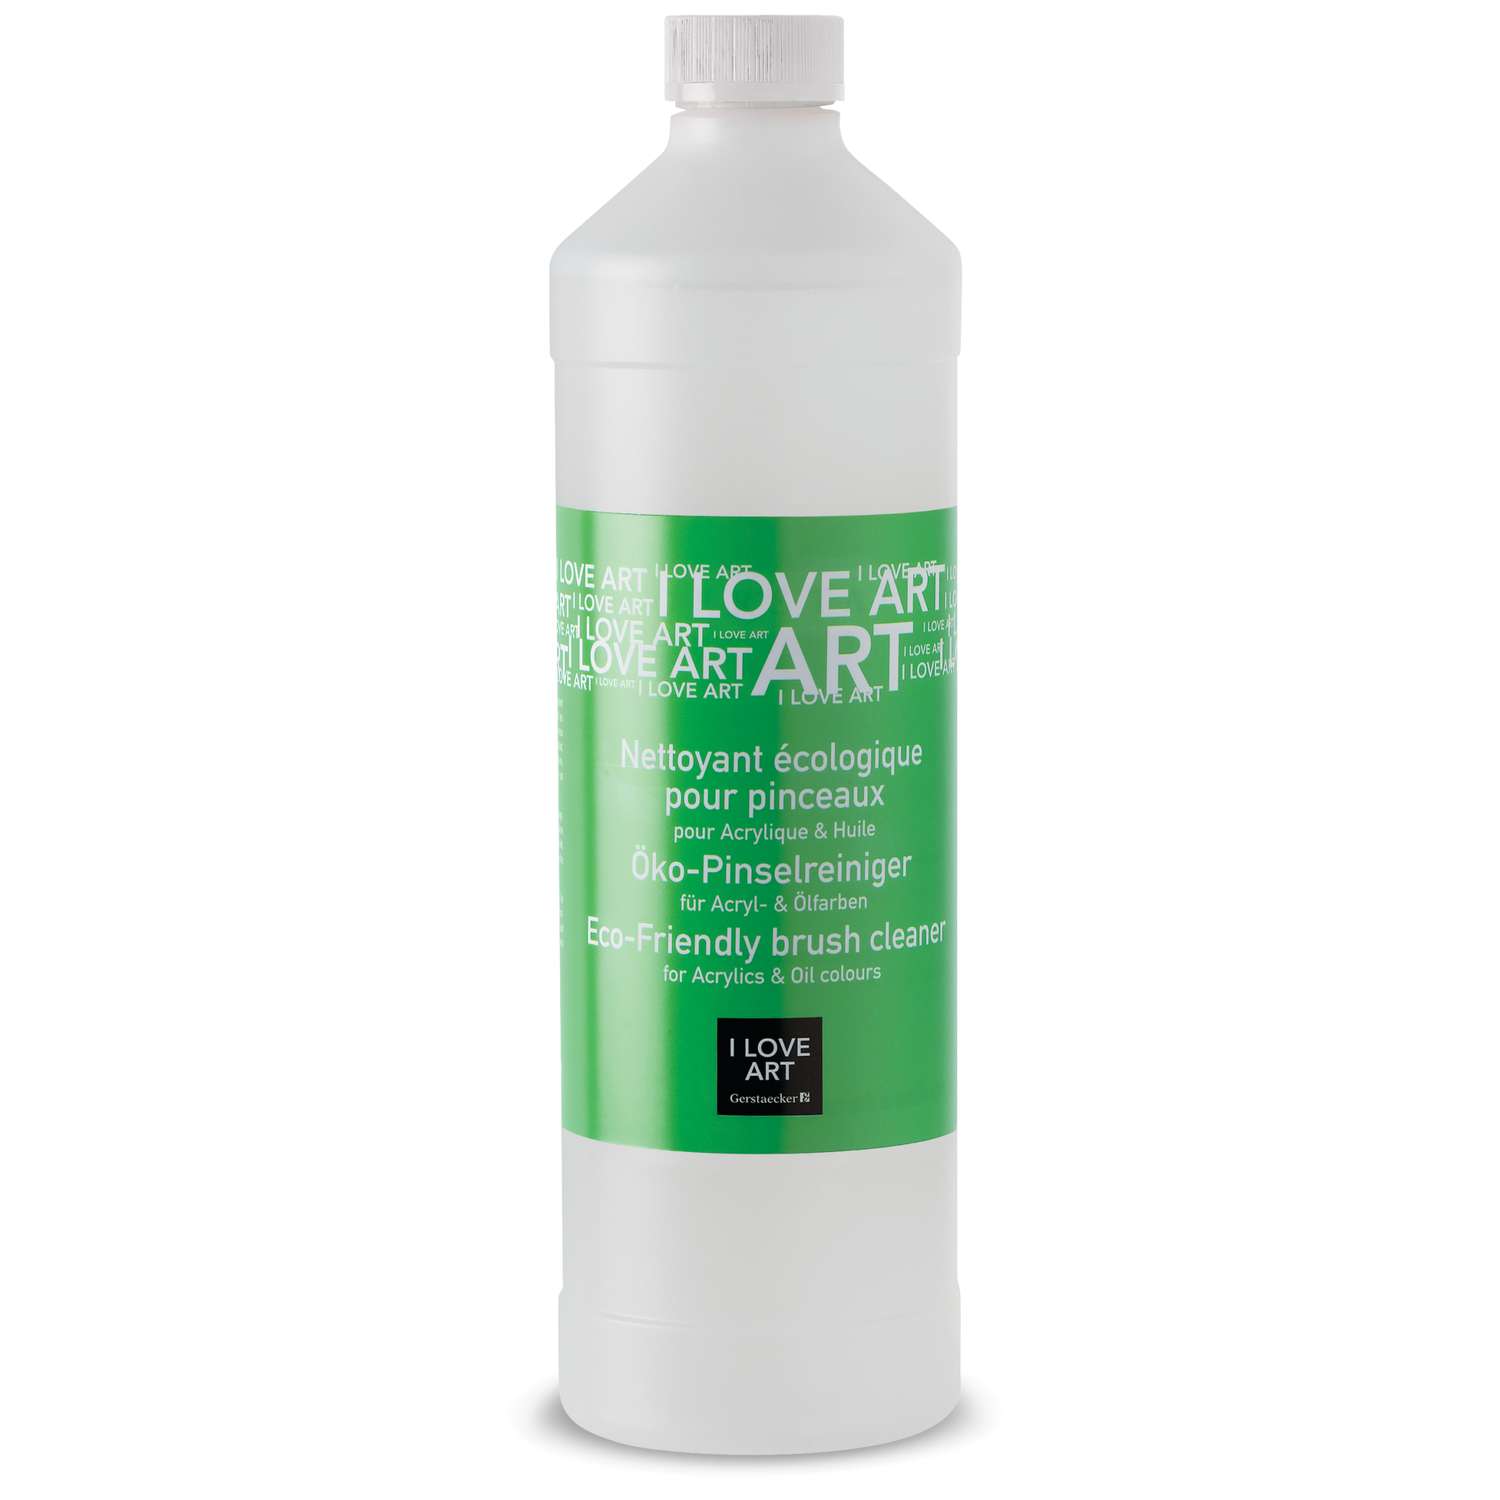 I LOVE ART, Ecological Brush Cleaner — 1 litre bottle, 50,000+ Art  Supplies